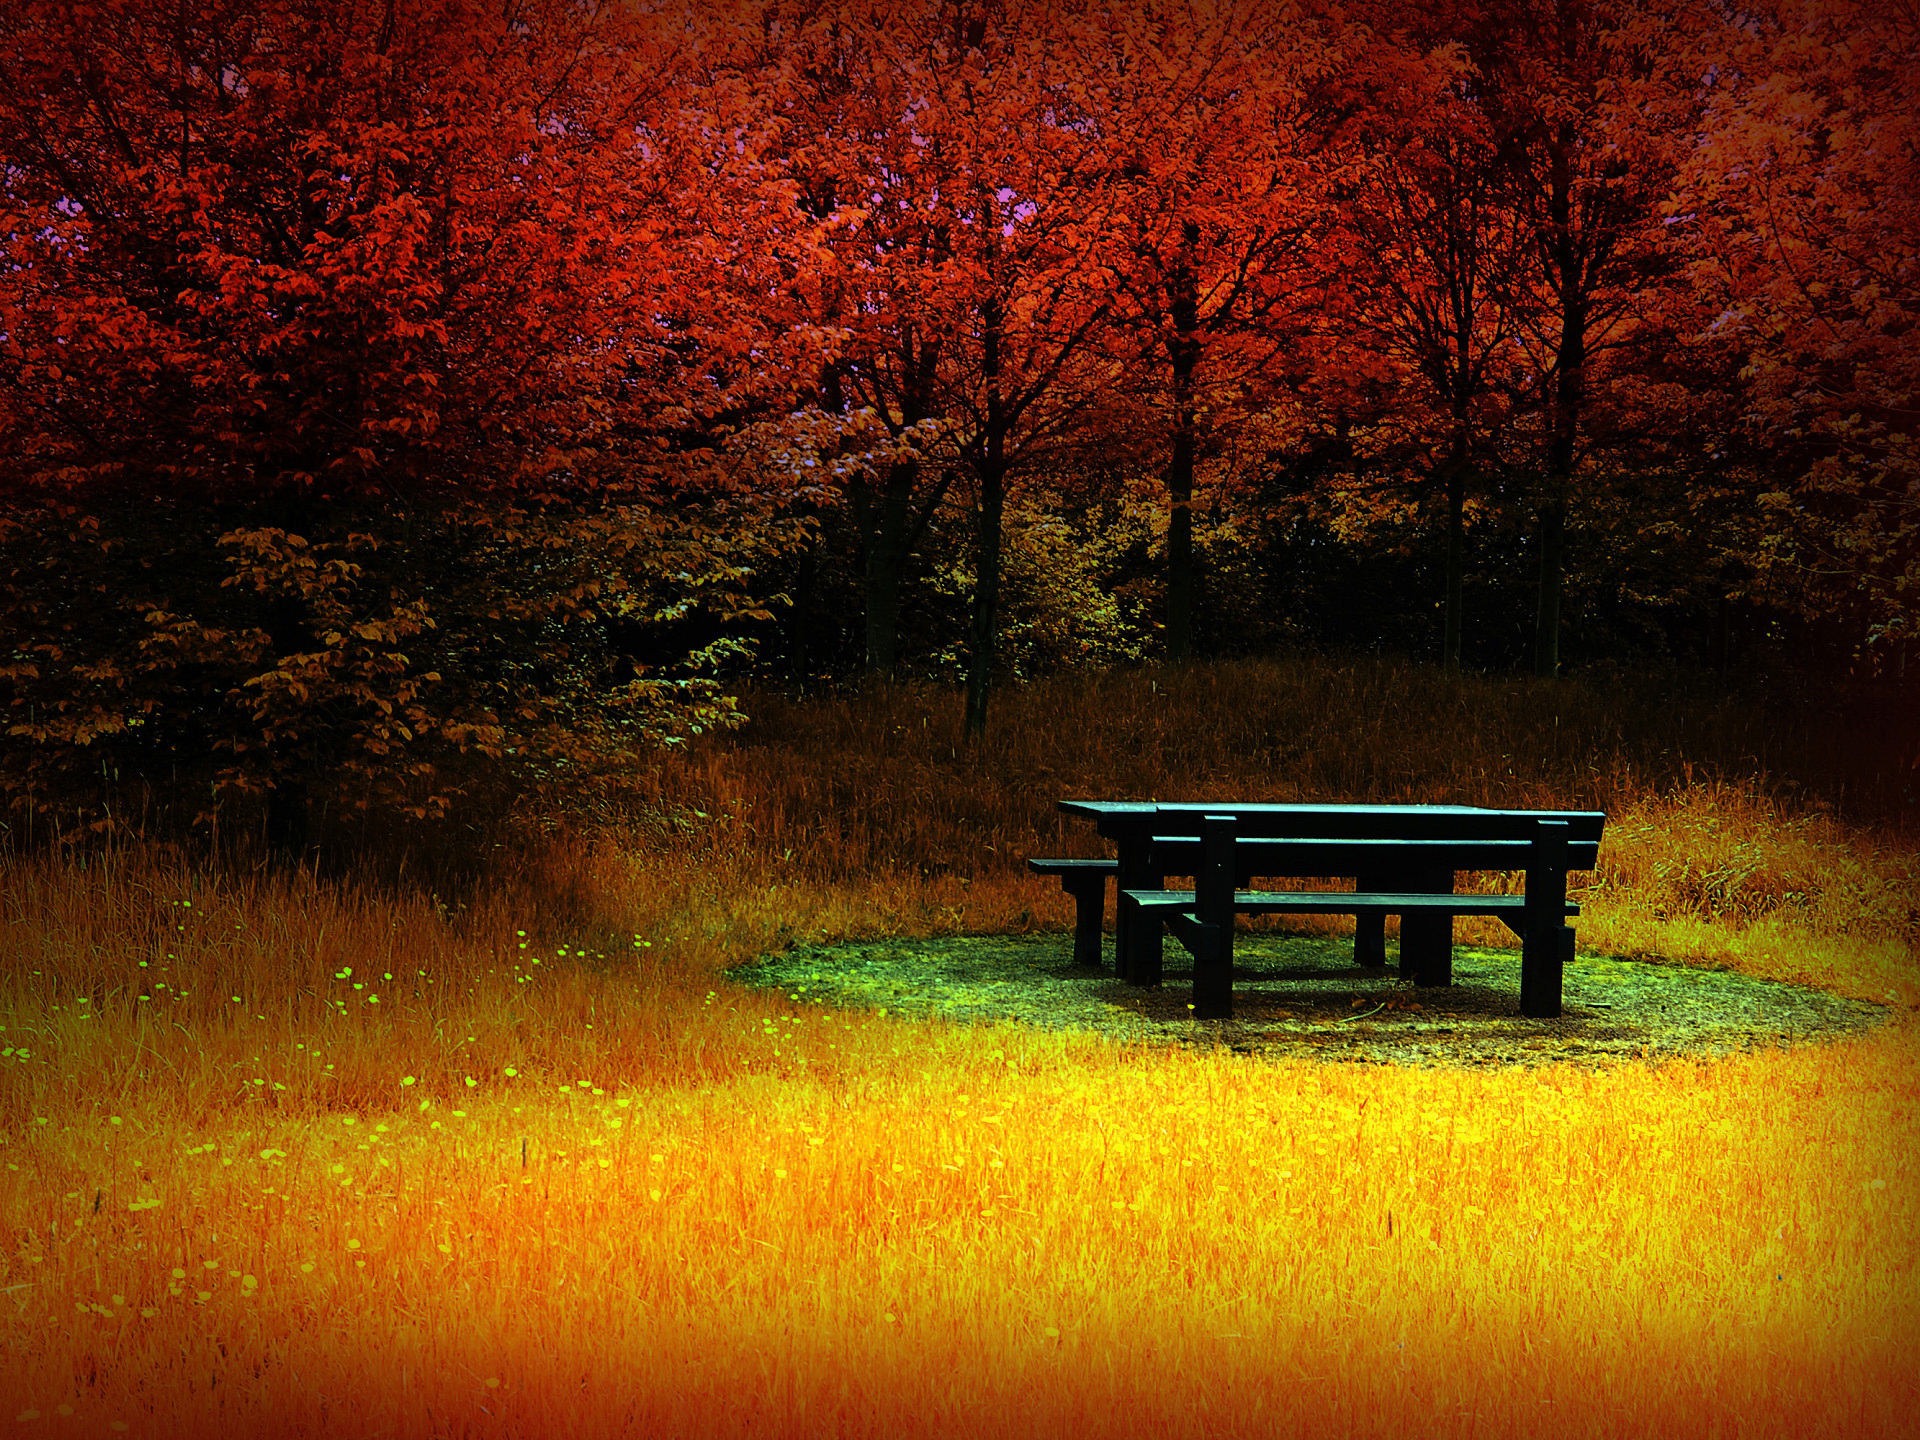 Скачать обои бесплатно Пейзаж, Осень, Дерево, Земля/природа картинка на рабочий стол ПК